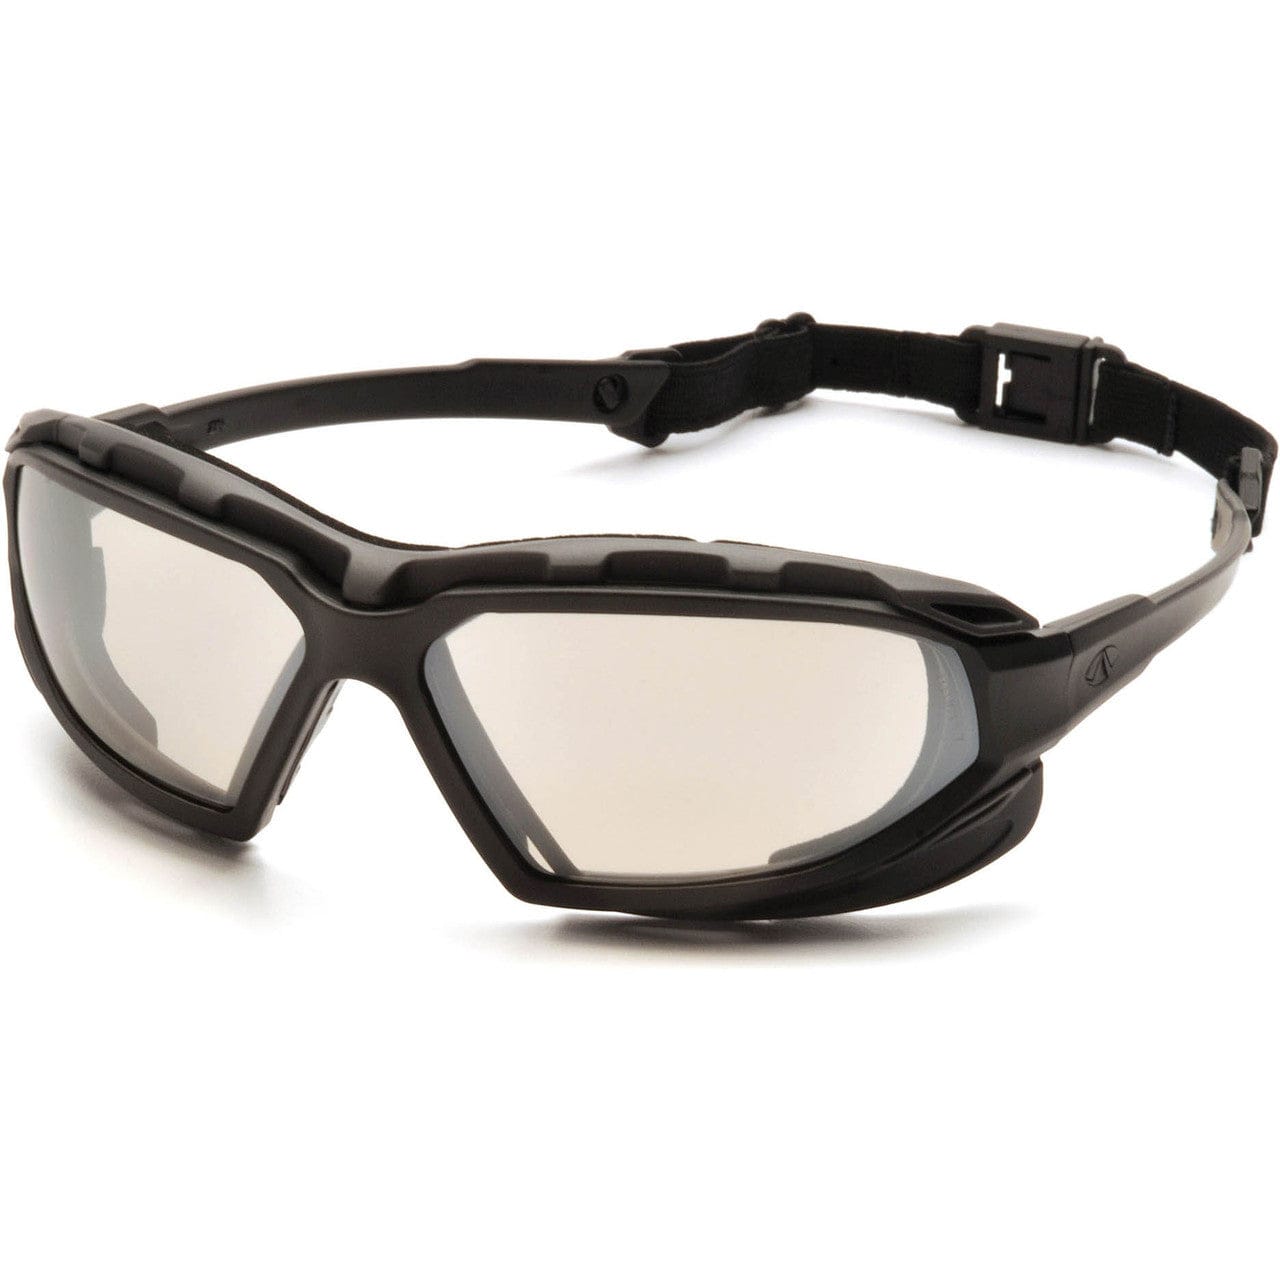 Pyramex Highlander Plus Safety Glasses Black Foam-Lined Frame Indoor/Outdoor Anti-Fog Lens SBG5080DT